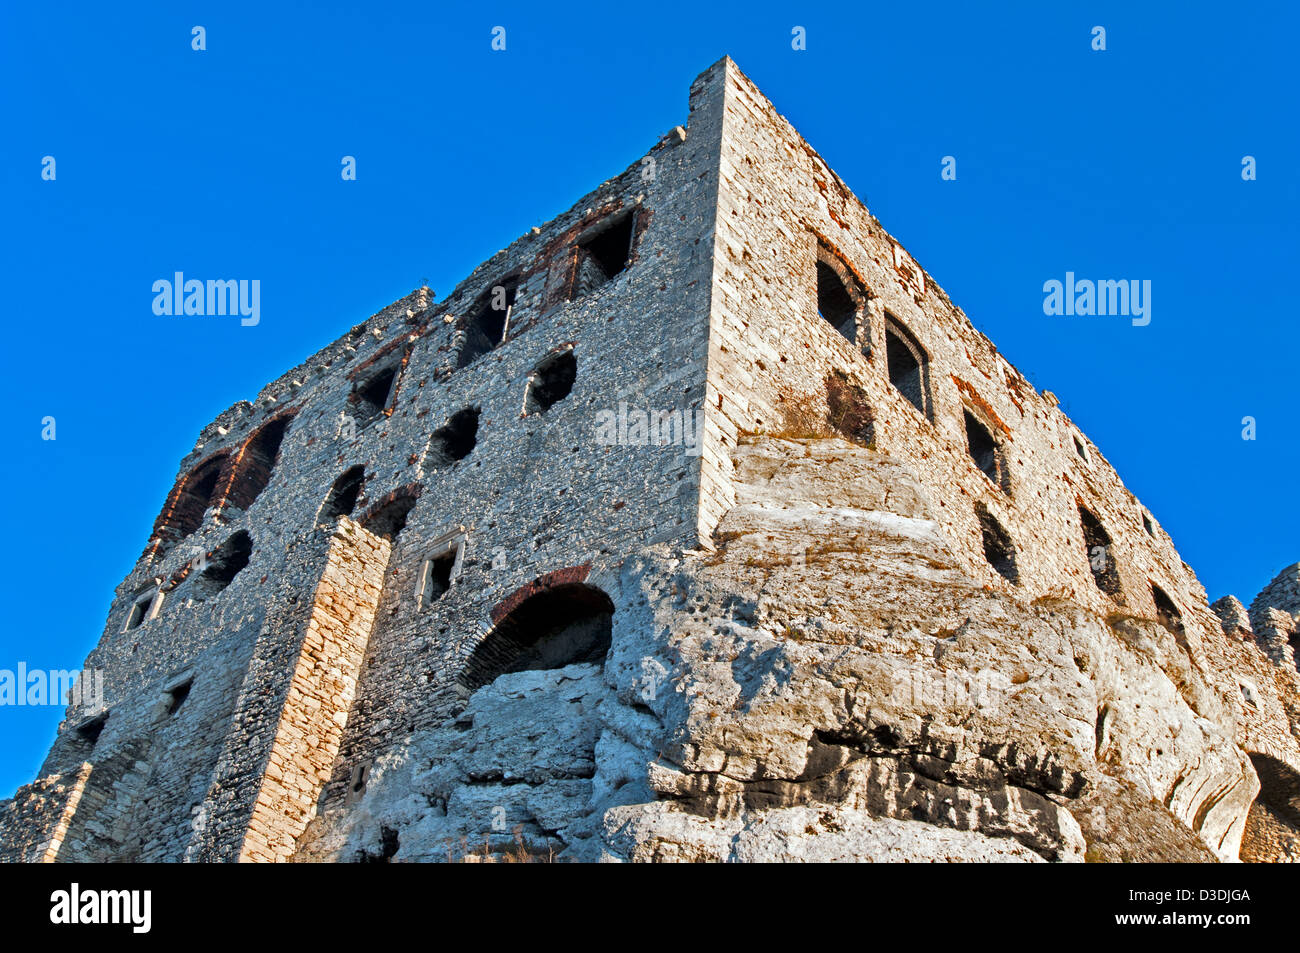 Die Ruinen der mittelalterlichen Burg Ogrodzieniec in Polen. Stockfoto